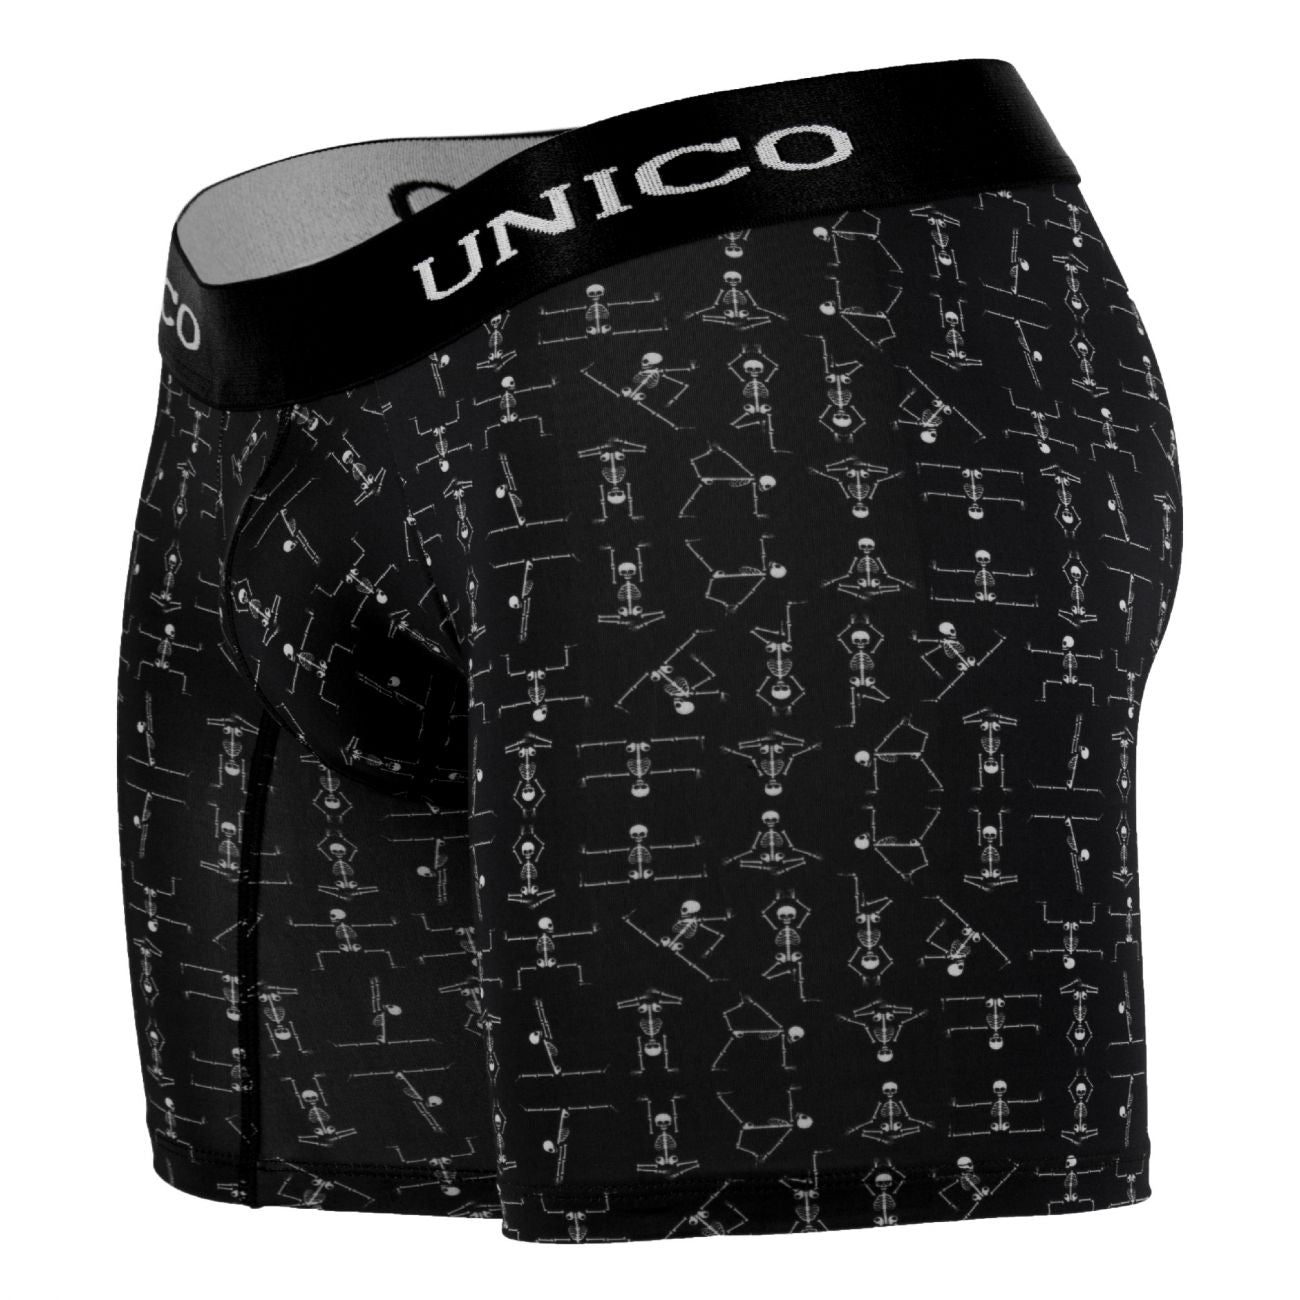 Unico 1803010021399 Boxer Briefs Skelleton Color Black